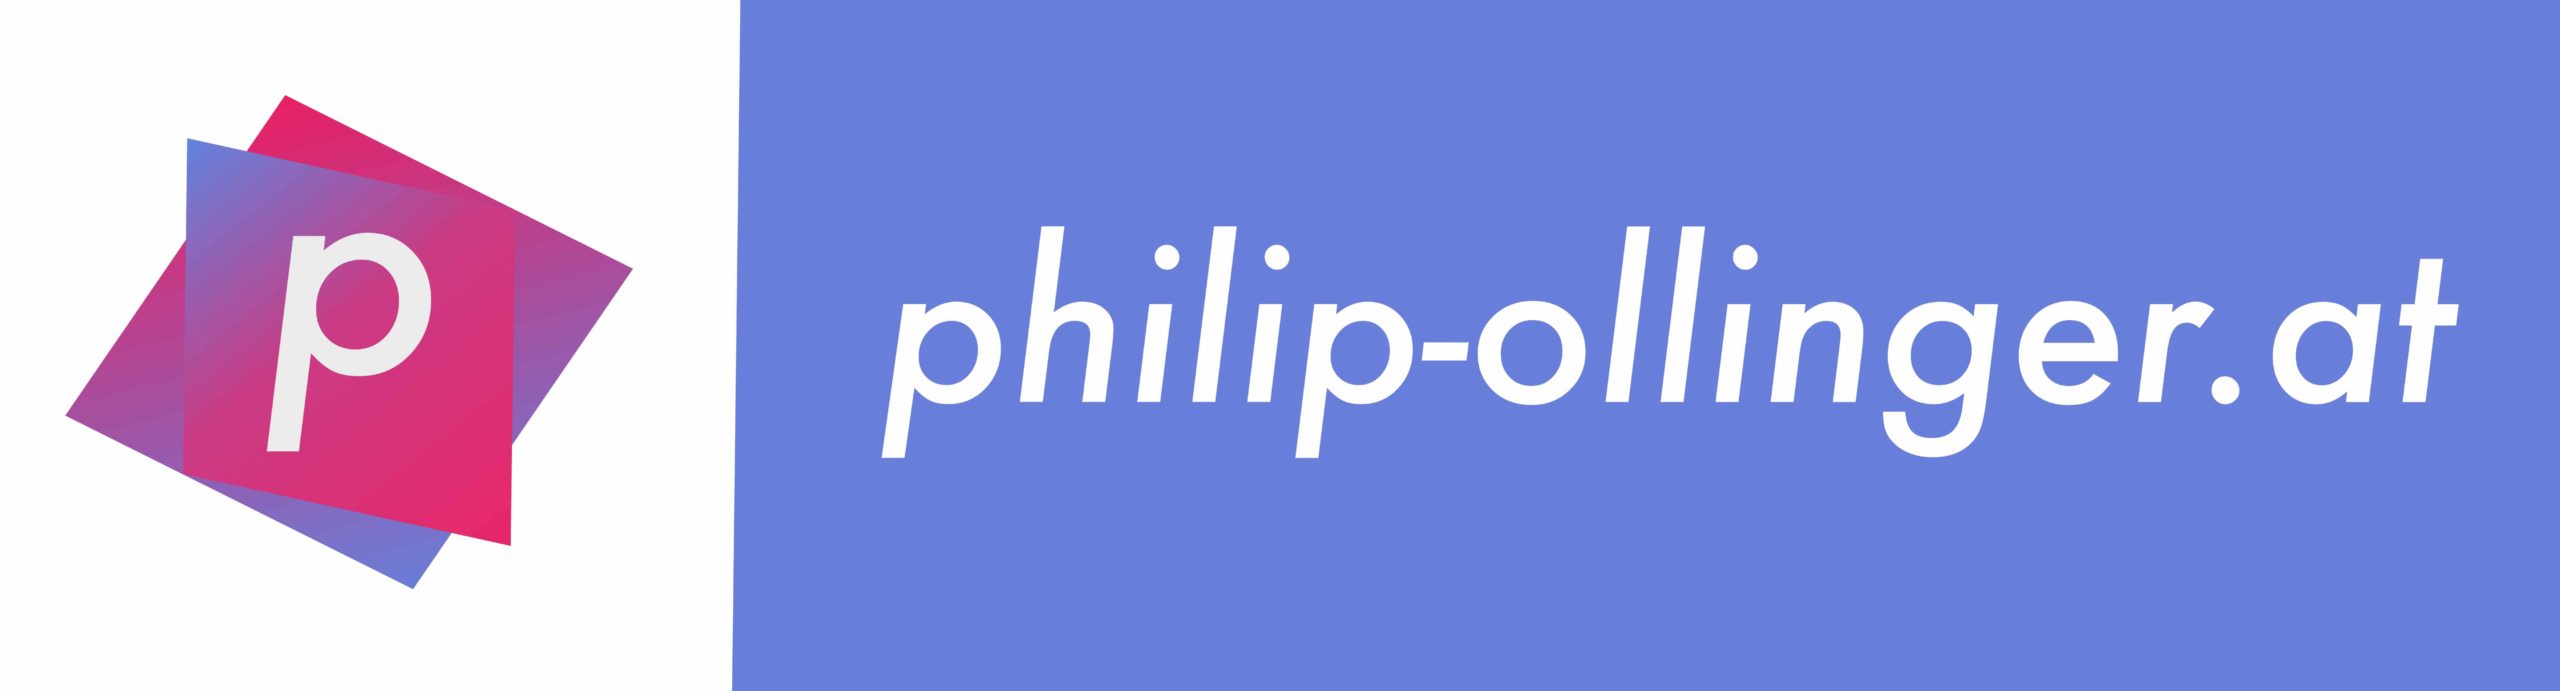 philip-ollinger.at